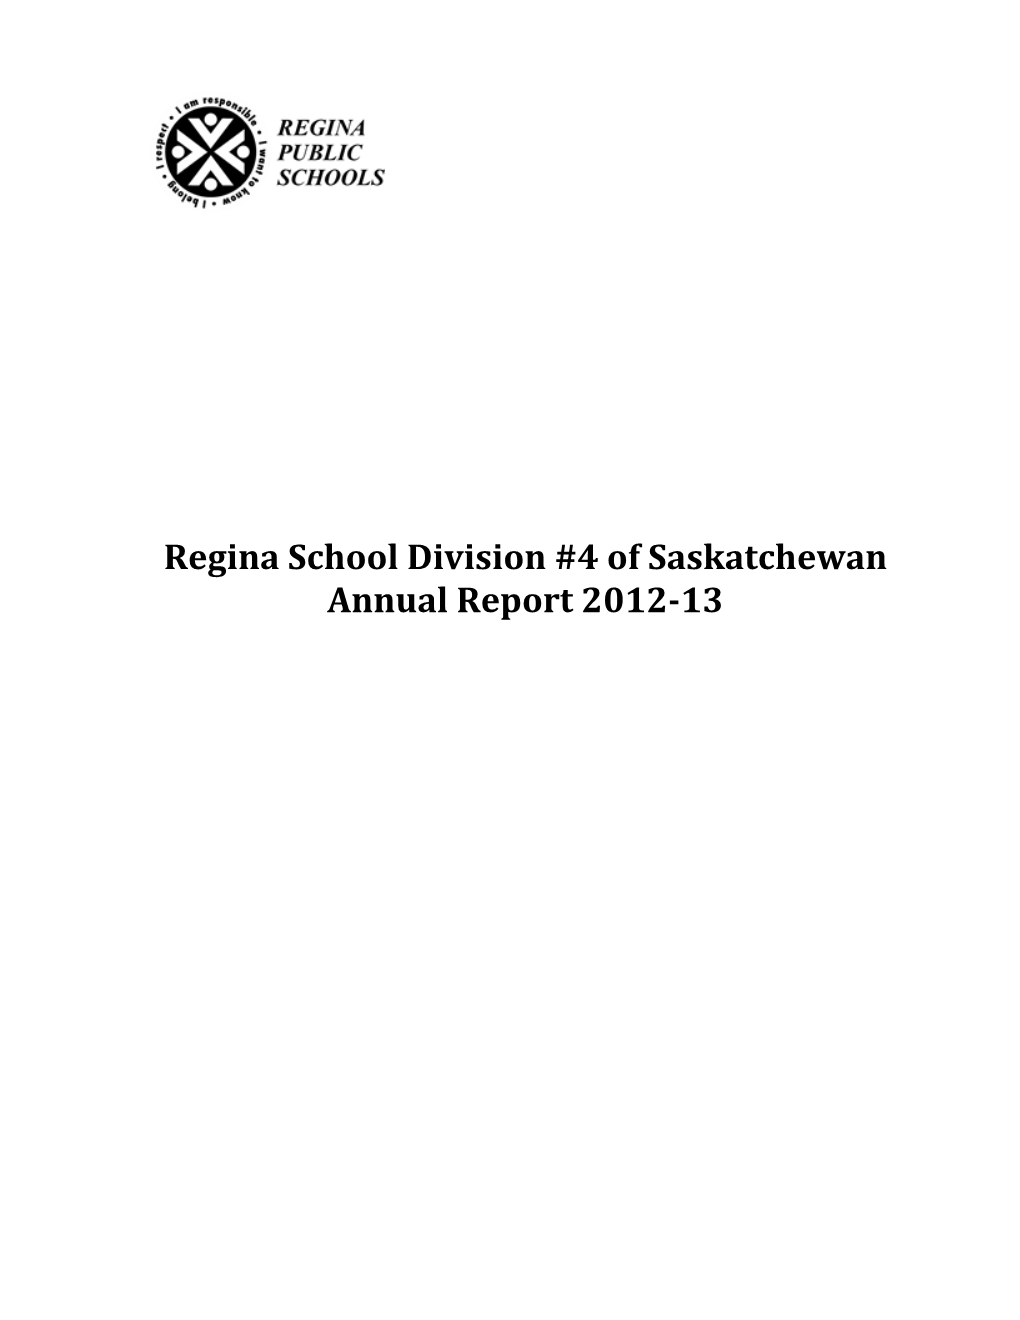 Regina School Division #4 of Saskatchewan Annual Report 2012-13